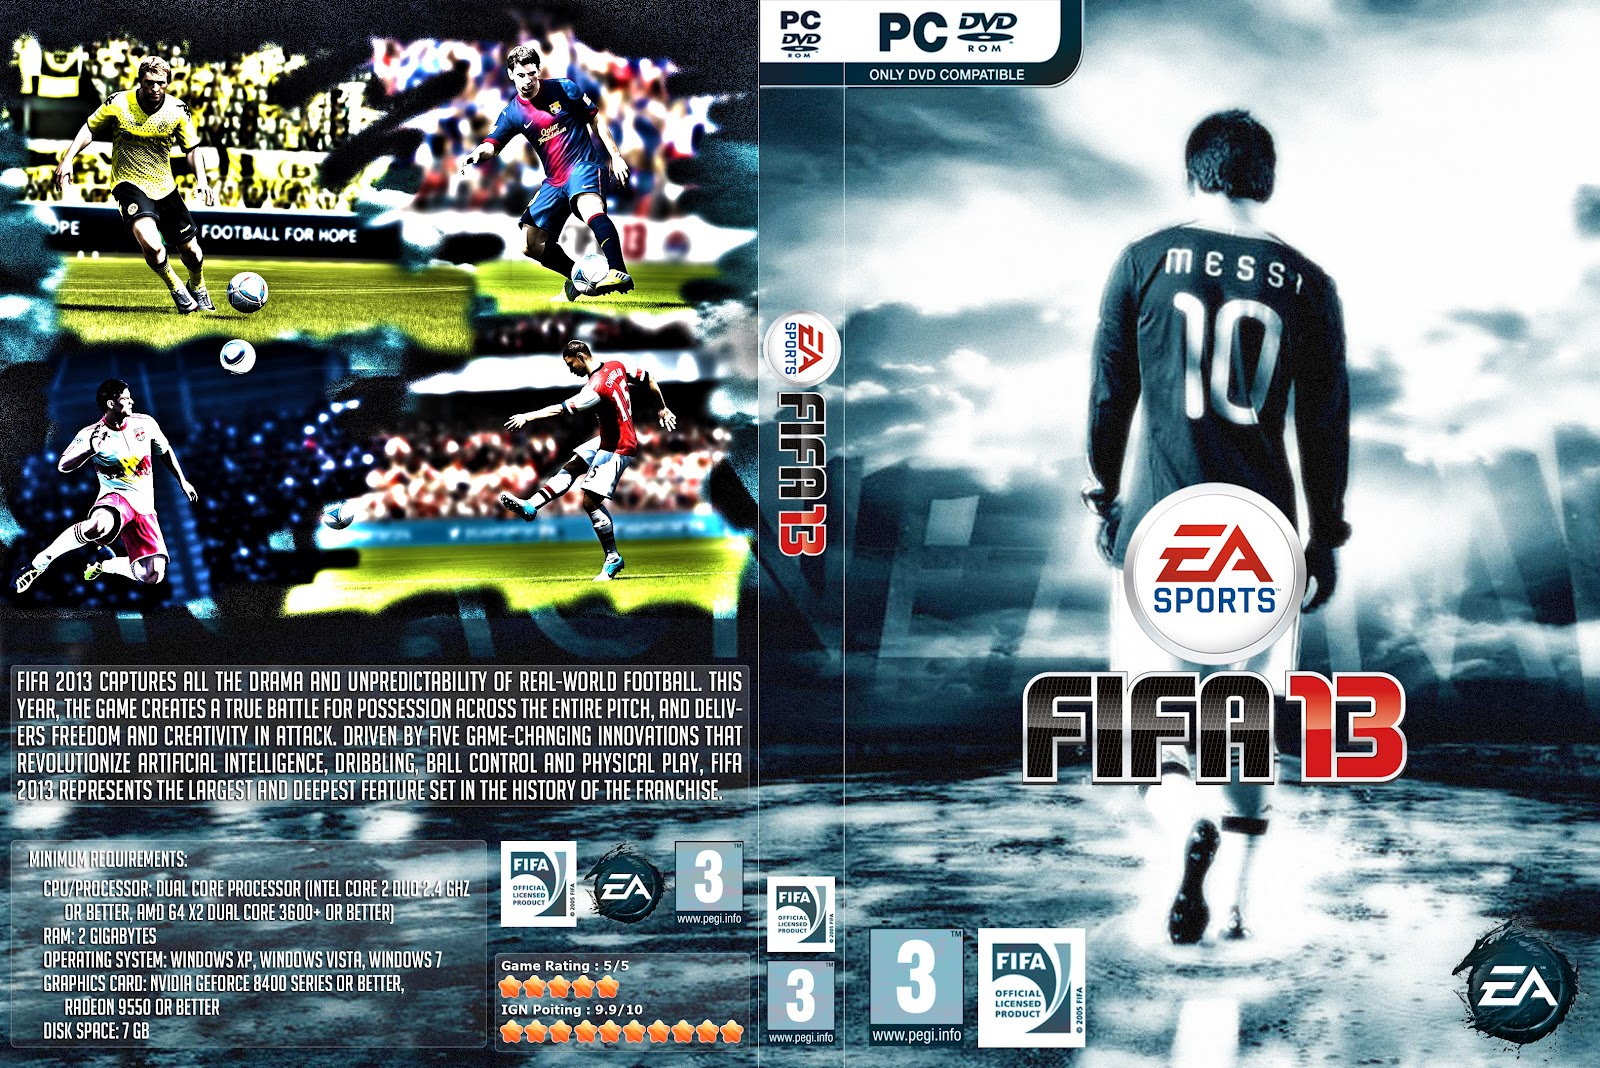 Jogo Computador Pc Dvd-rom Fifa 13 Lacrado Em Português. - Desconto no Preço